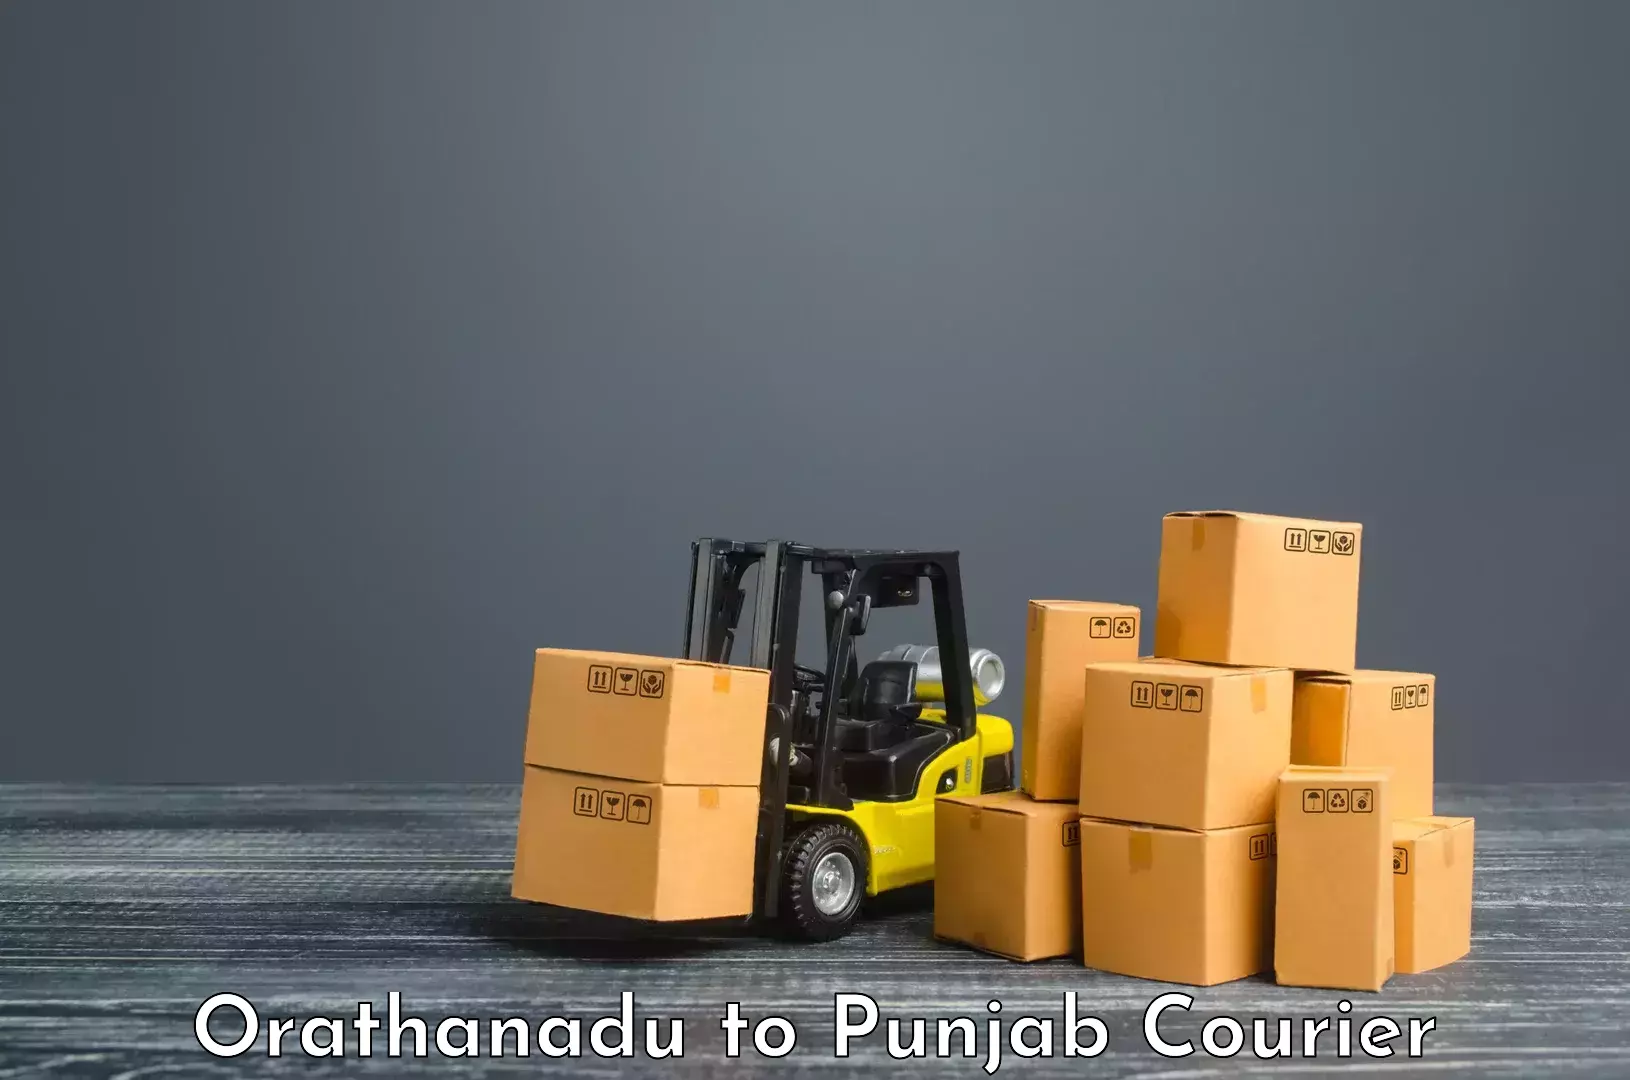 Cargo courier service Orathanadu to Firozpur